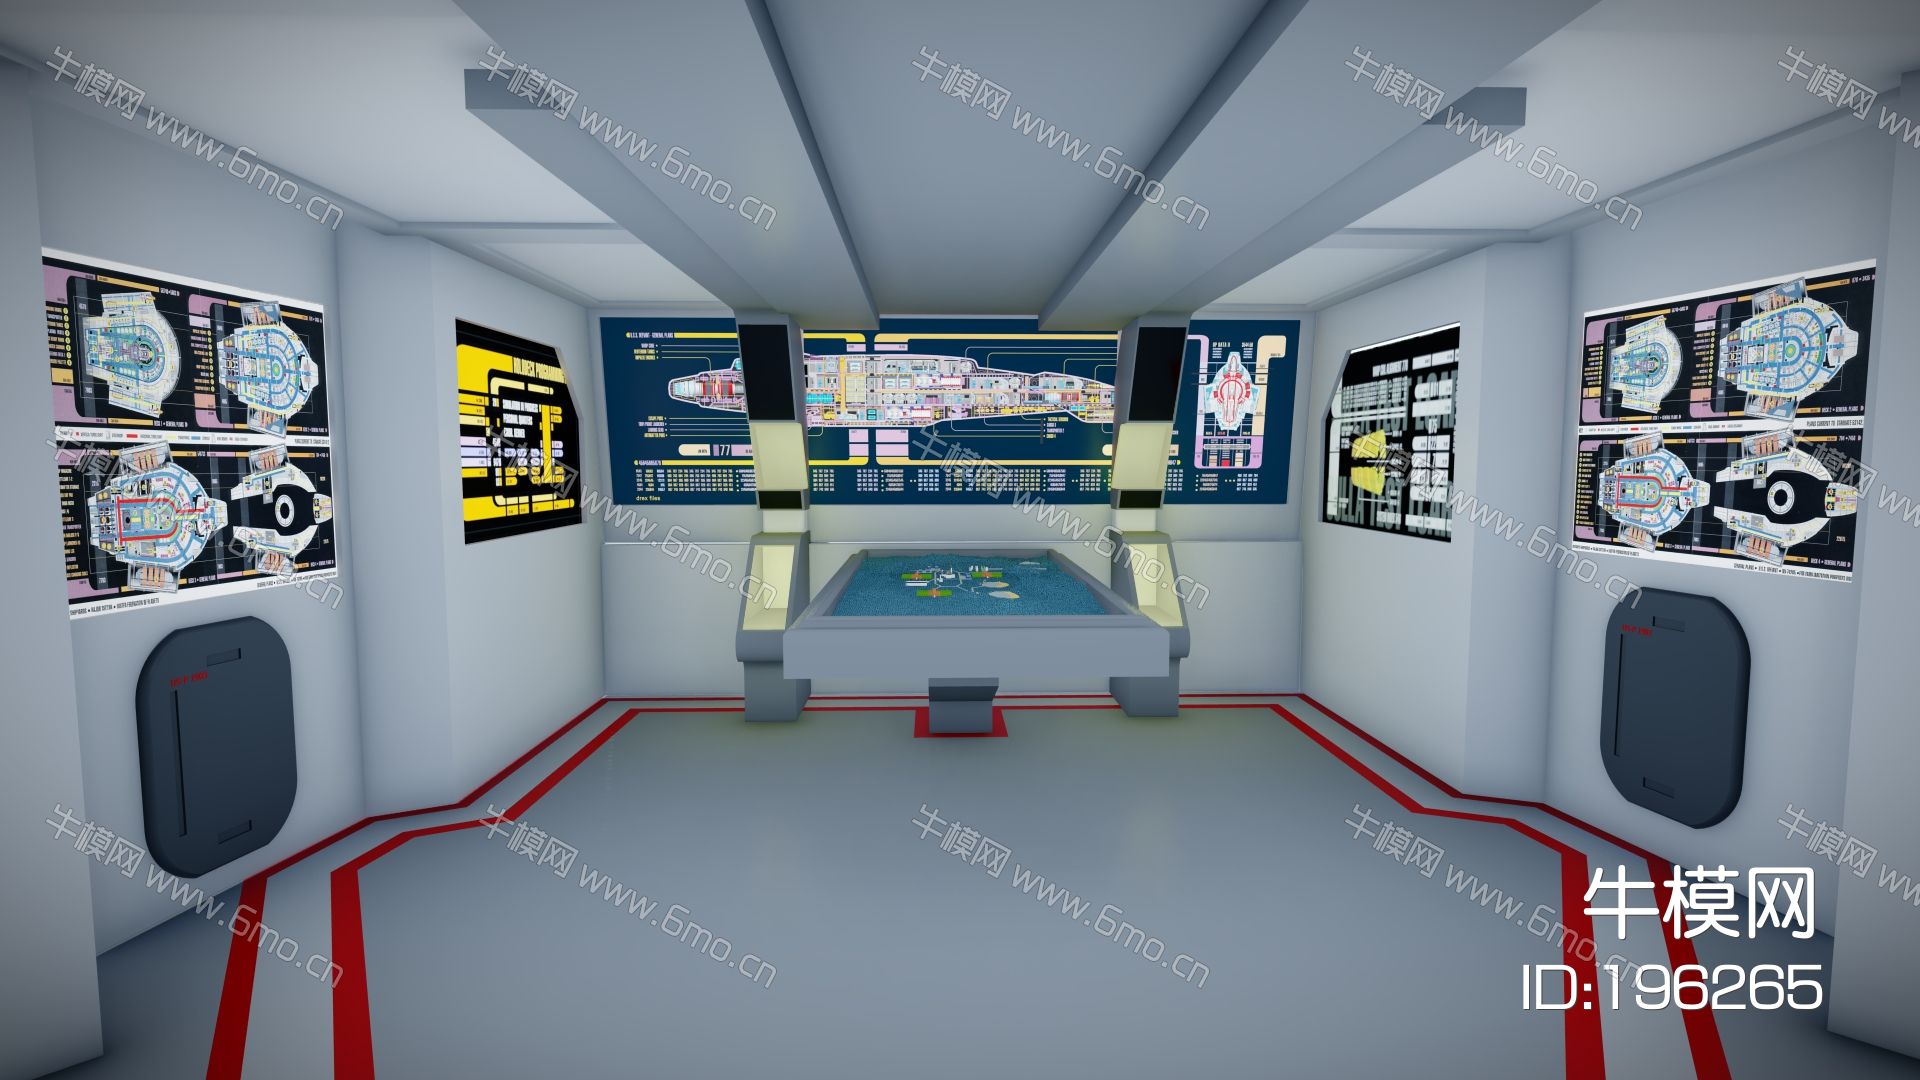 现代科幻科技展厅 科技太空舱 科幻场景太空舱  科技体验馆 太空飞船驾驶舱